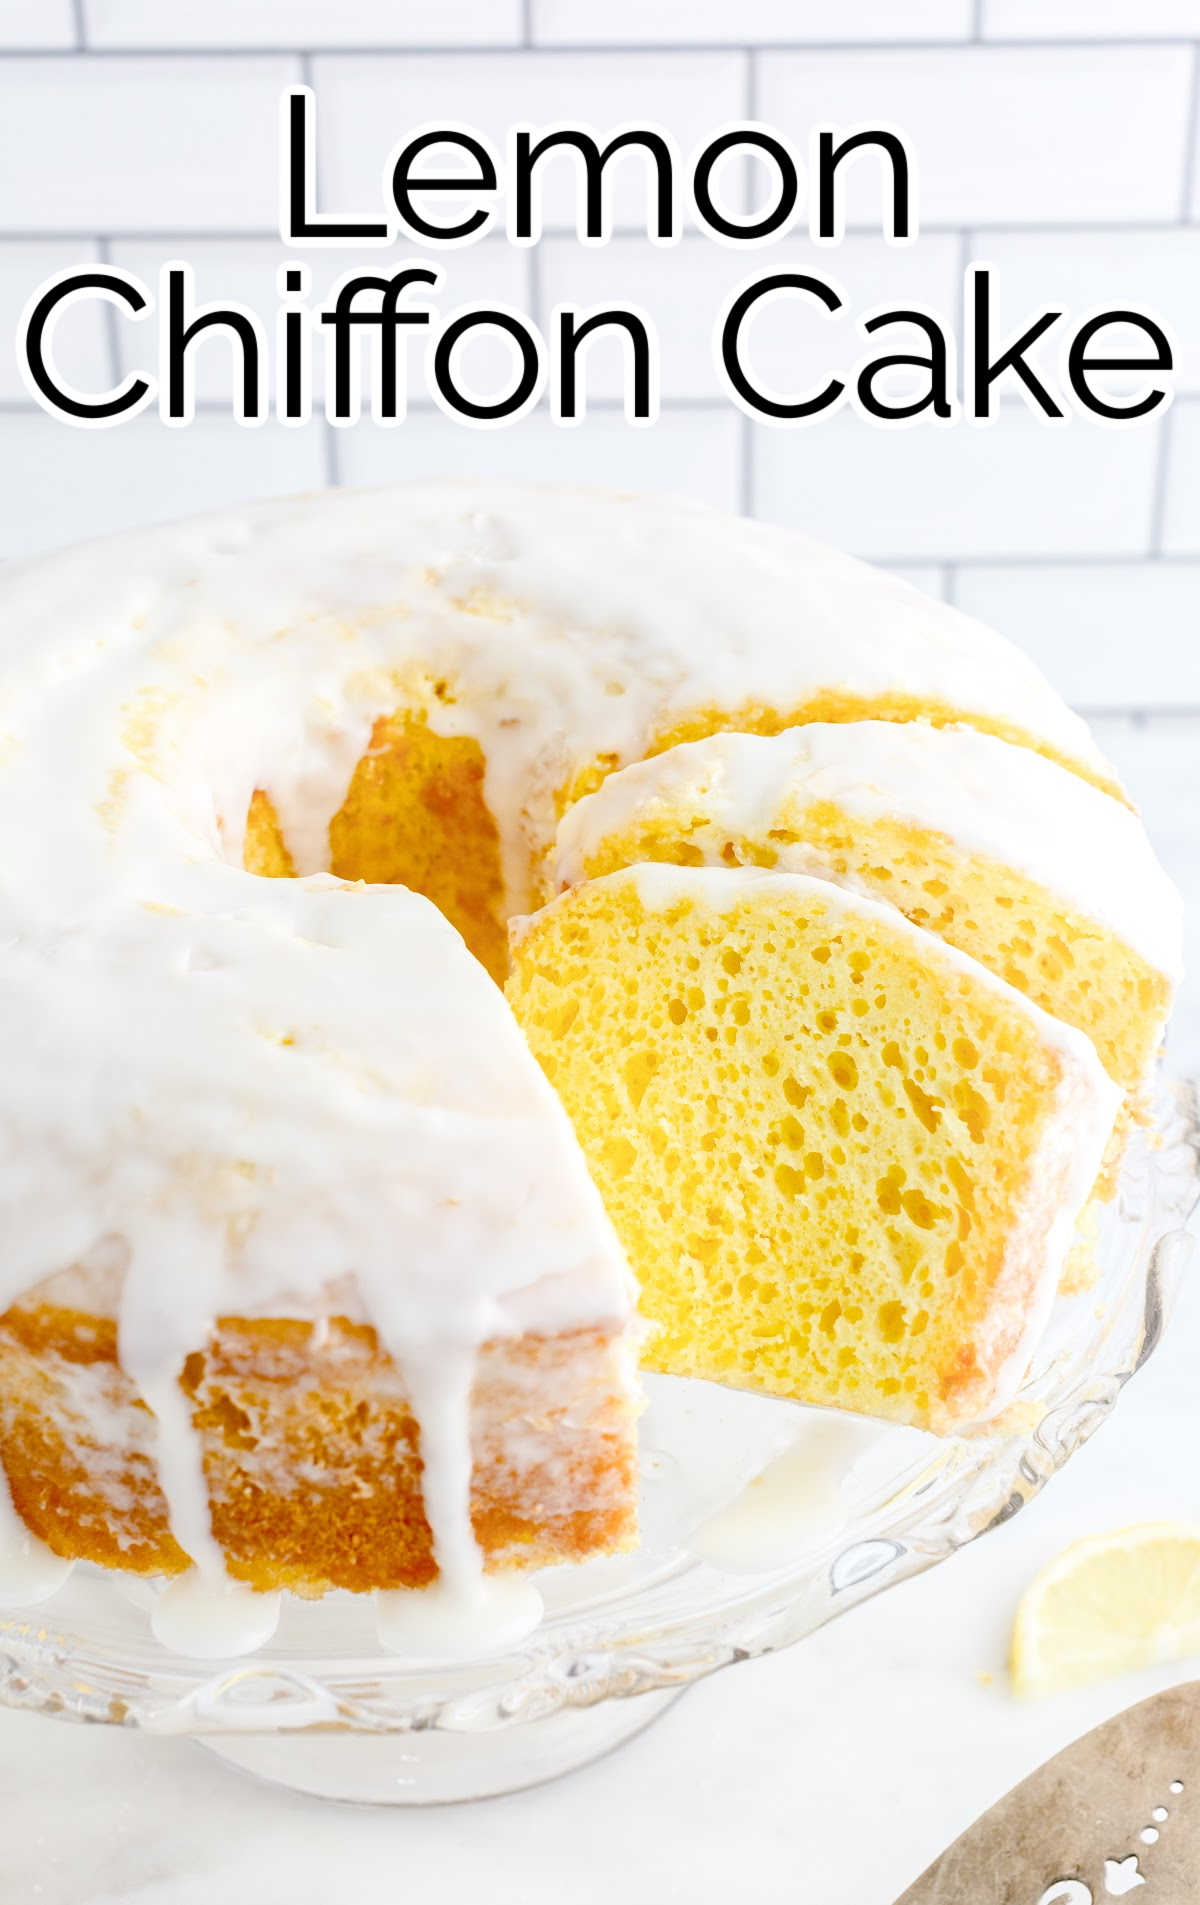 Lemon Chiffon Cake on a cake stand